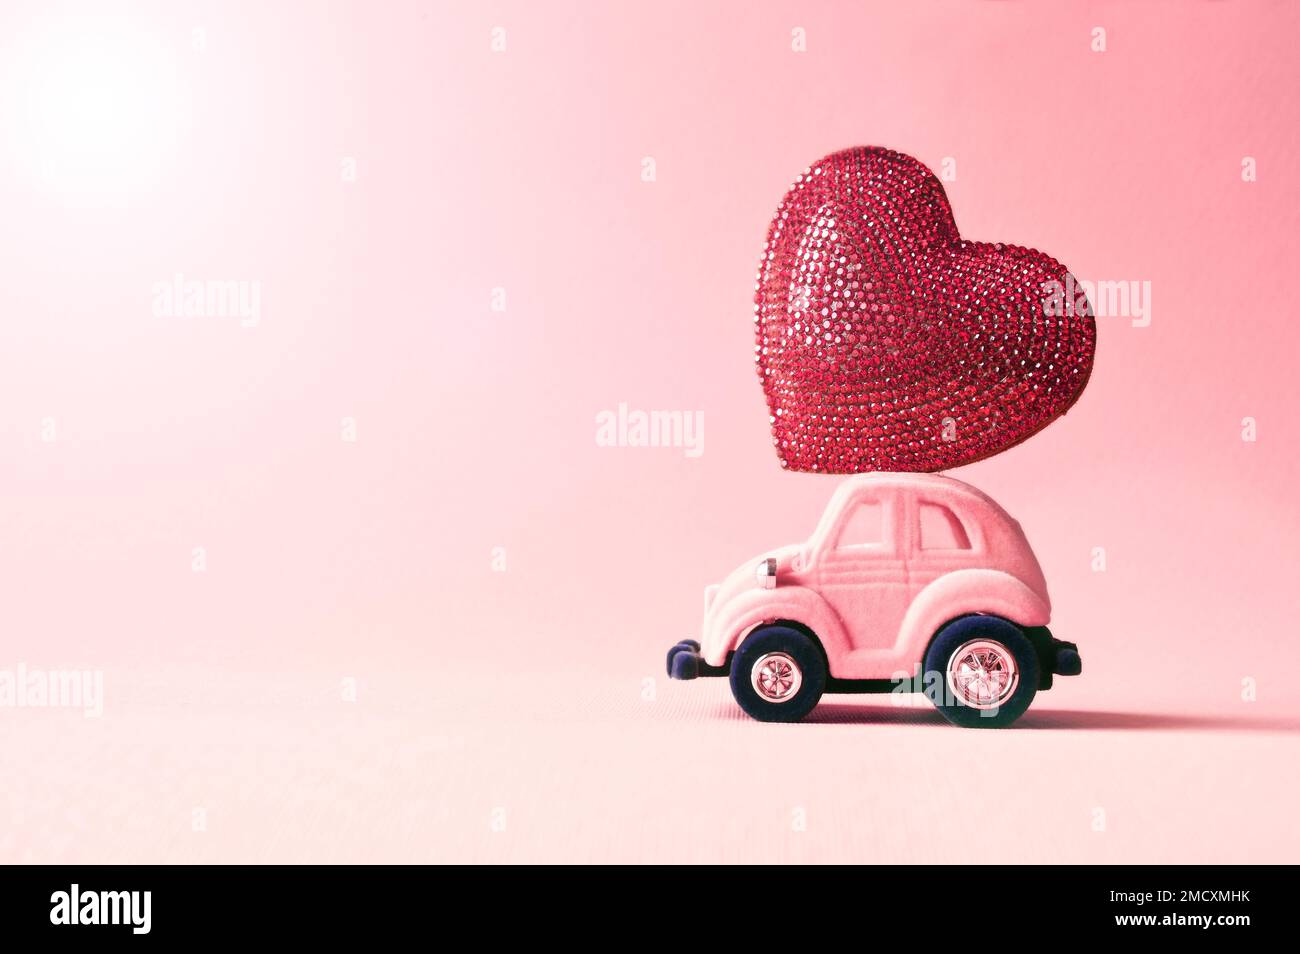 Voiture-jouet rétro offrant un coeur d'artisanat pour la Saint-Valentin sur fond rose Banque D'Images